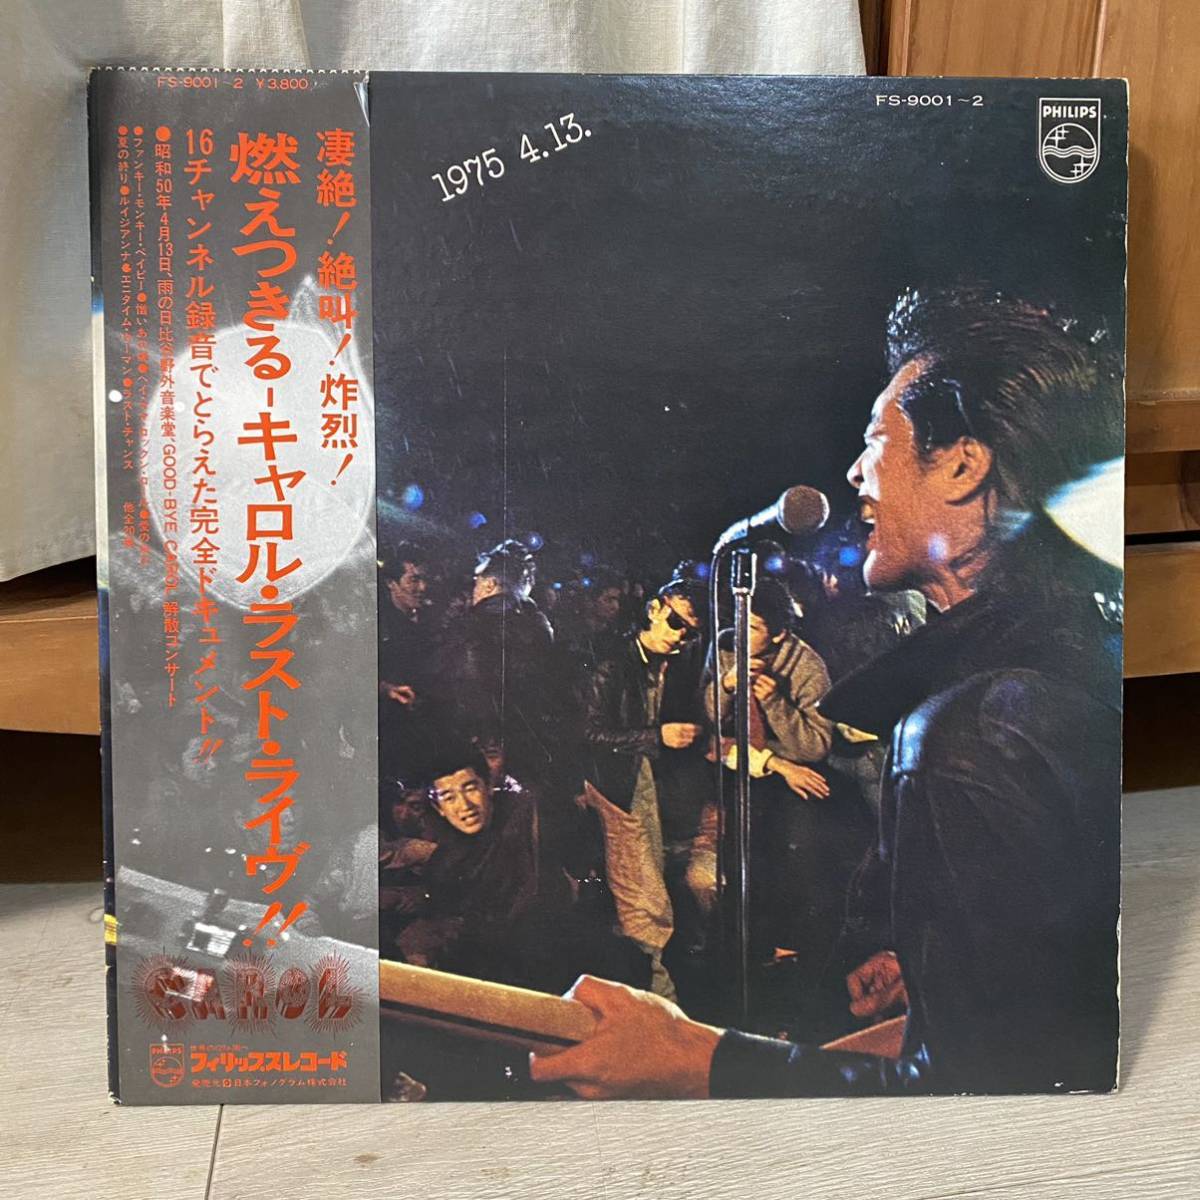 LP CAROL 燃えつき キャロル・ラスト・ライブ　1975 4.13. LIVE 帯付_画像1